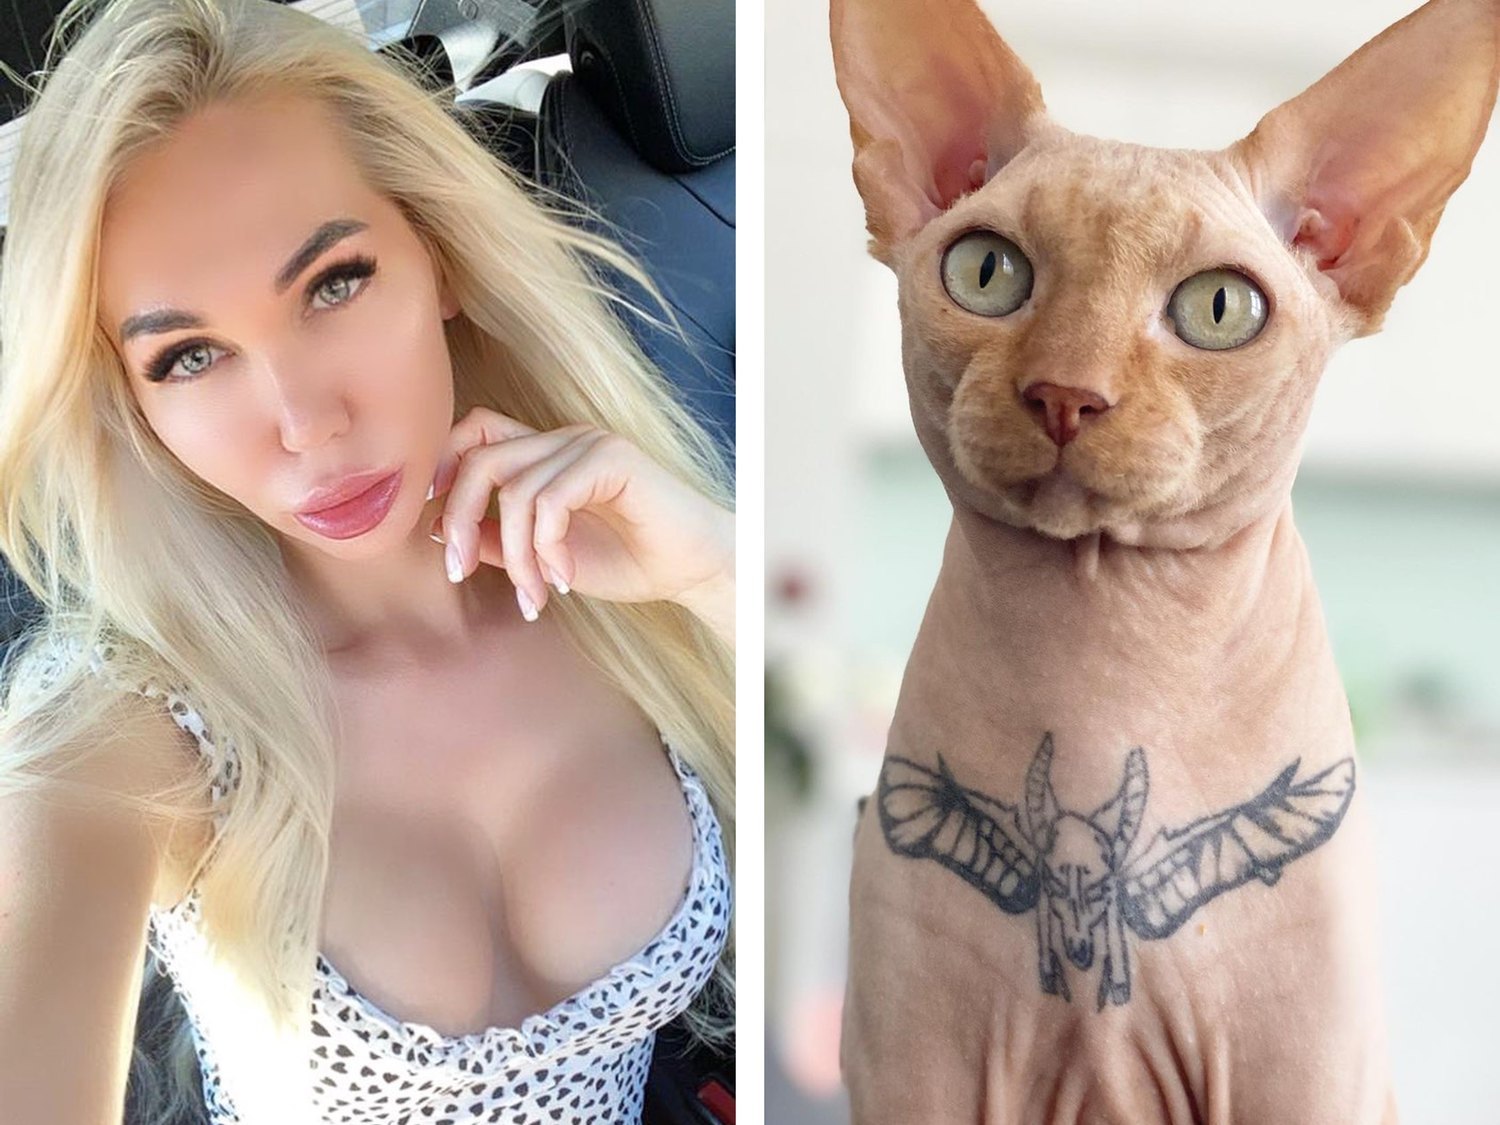 Acusan a una influencer de maltrato animal por tatuar a su gato: "En su piel vive una tortura"